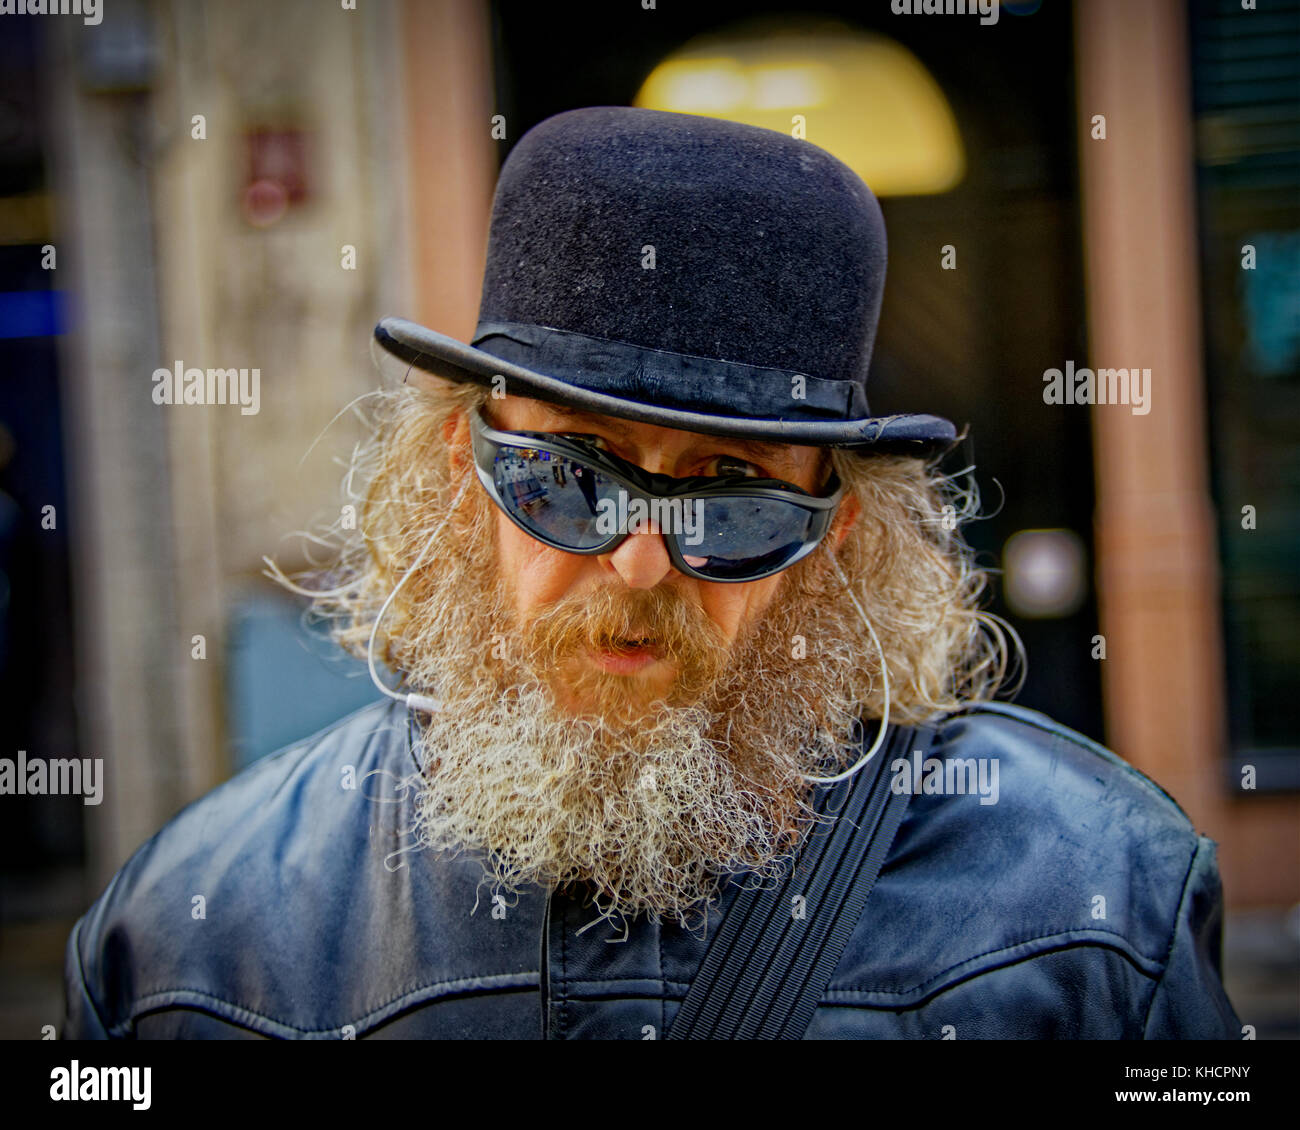 El artista local frankie Patrick Robertson, personaje en la calle sombrero impermeable gafas de sol hombre feliz barbudo conectado al sonido Foto de stock